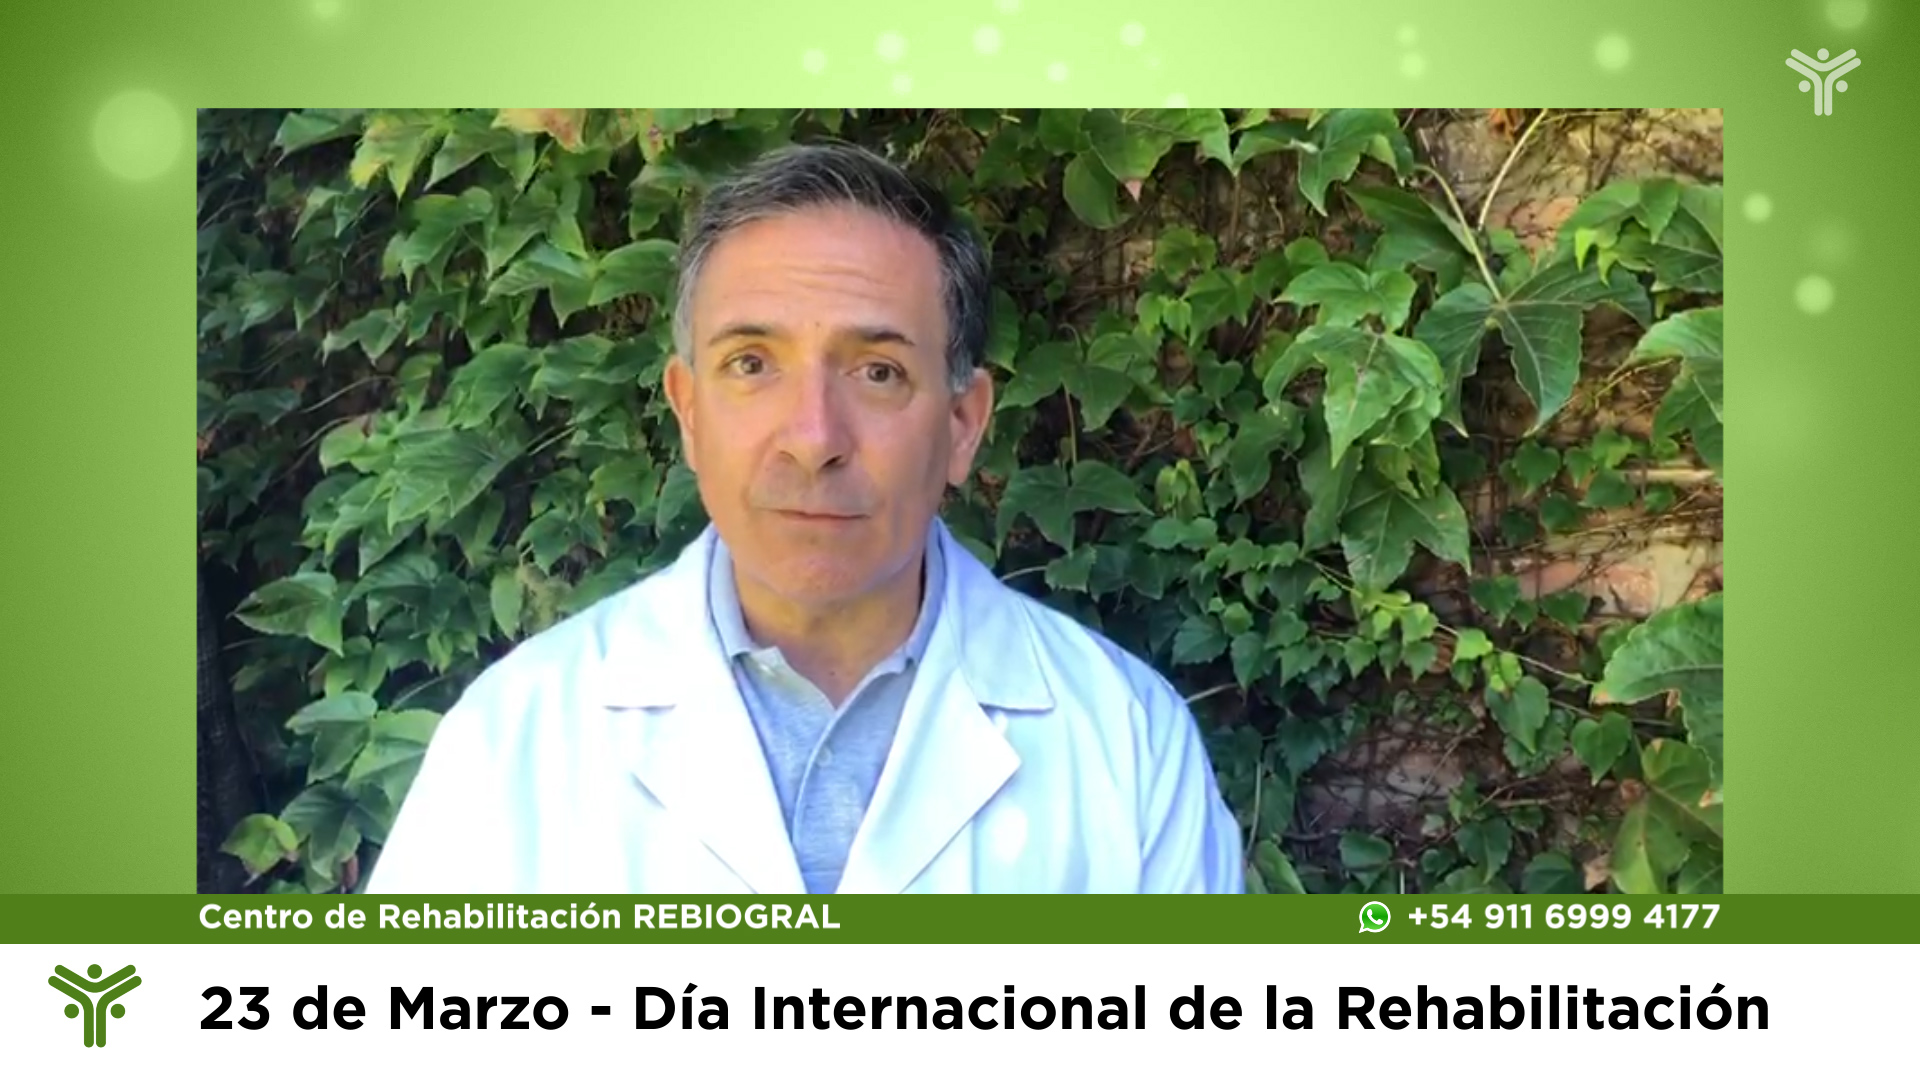 El DR. Quiñones Molina hablando sobre el día internacional de la rehabilitación